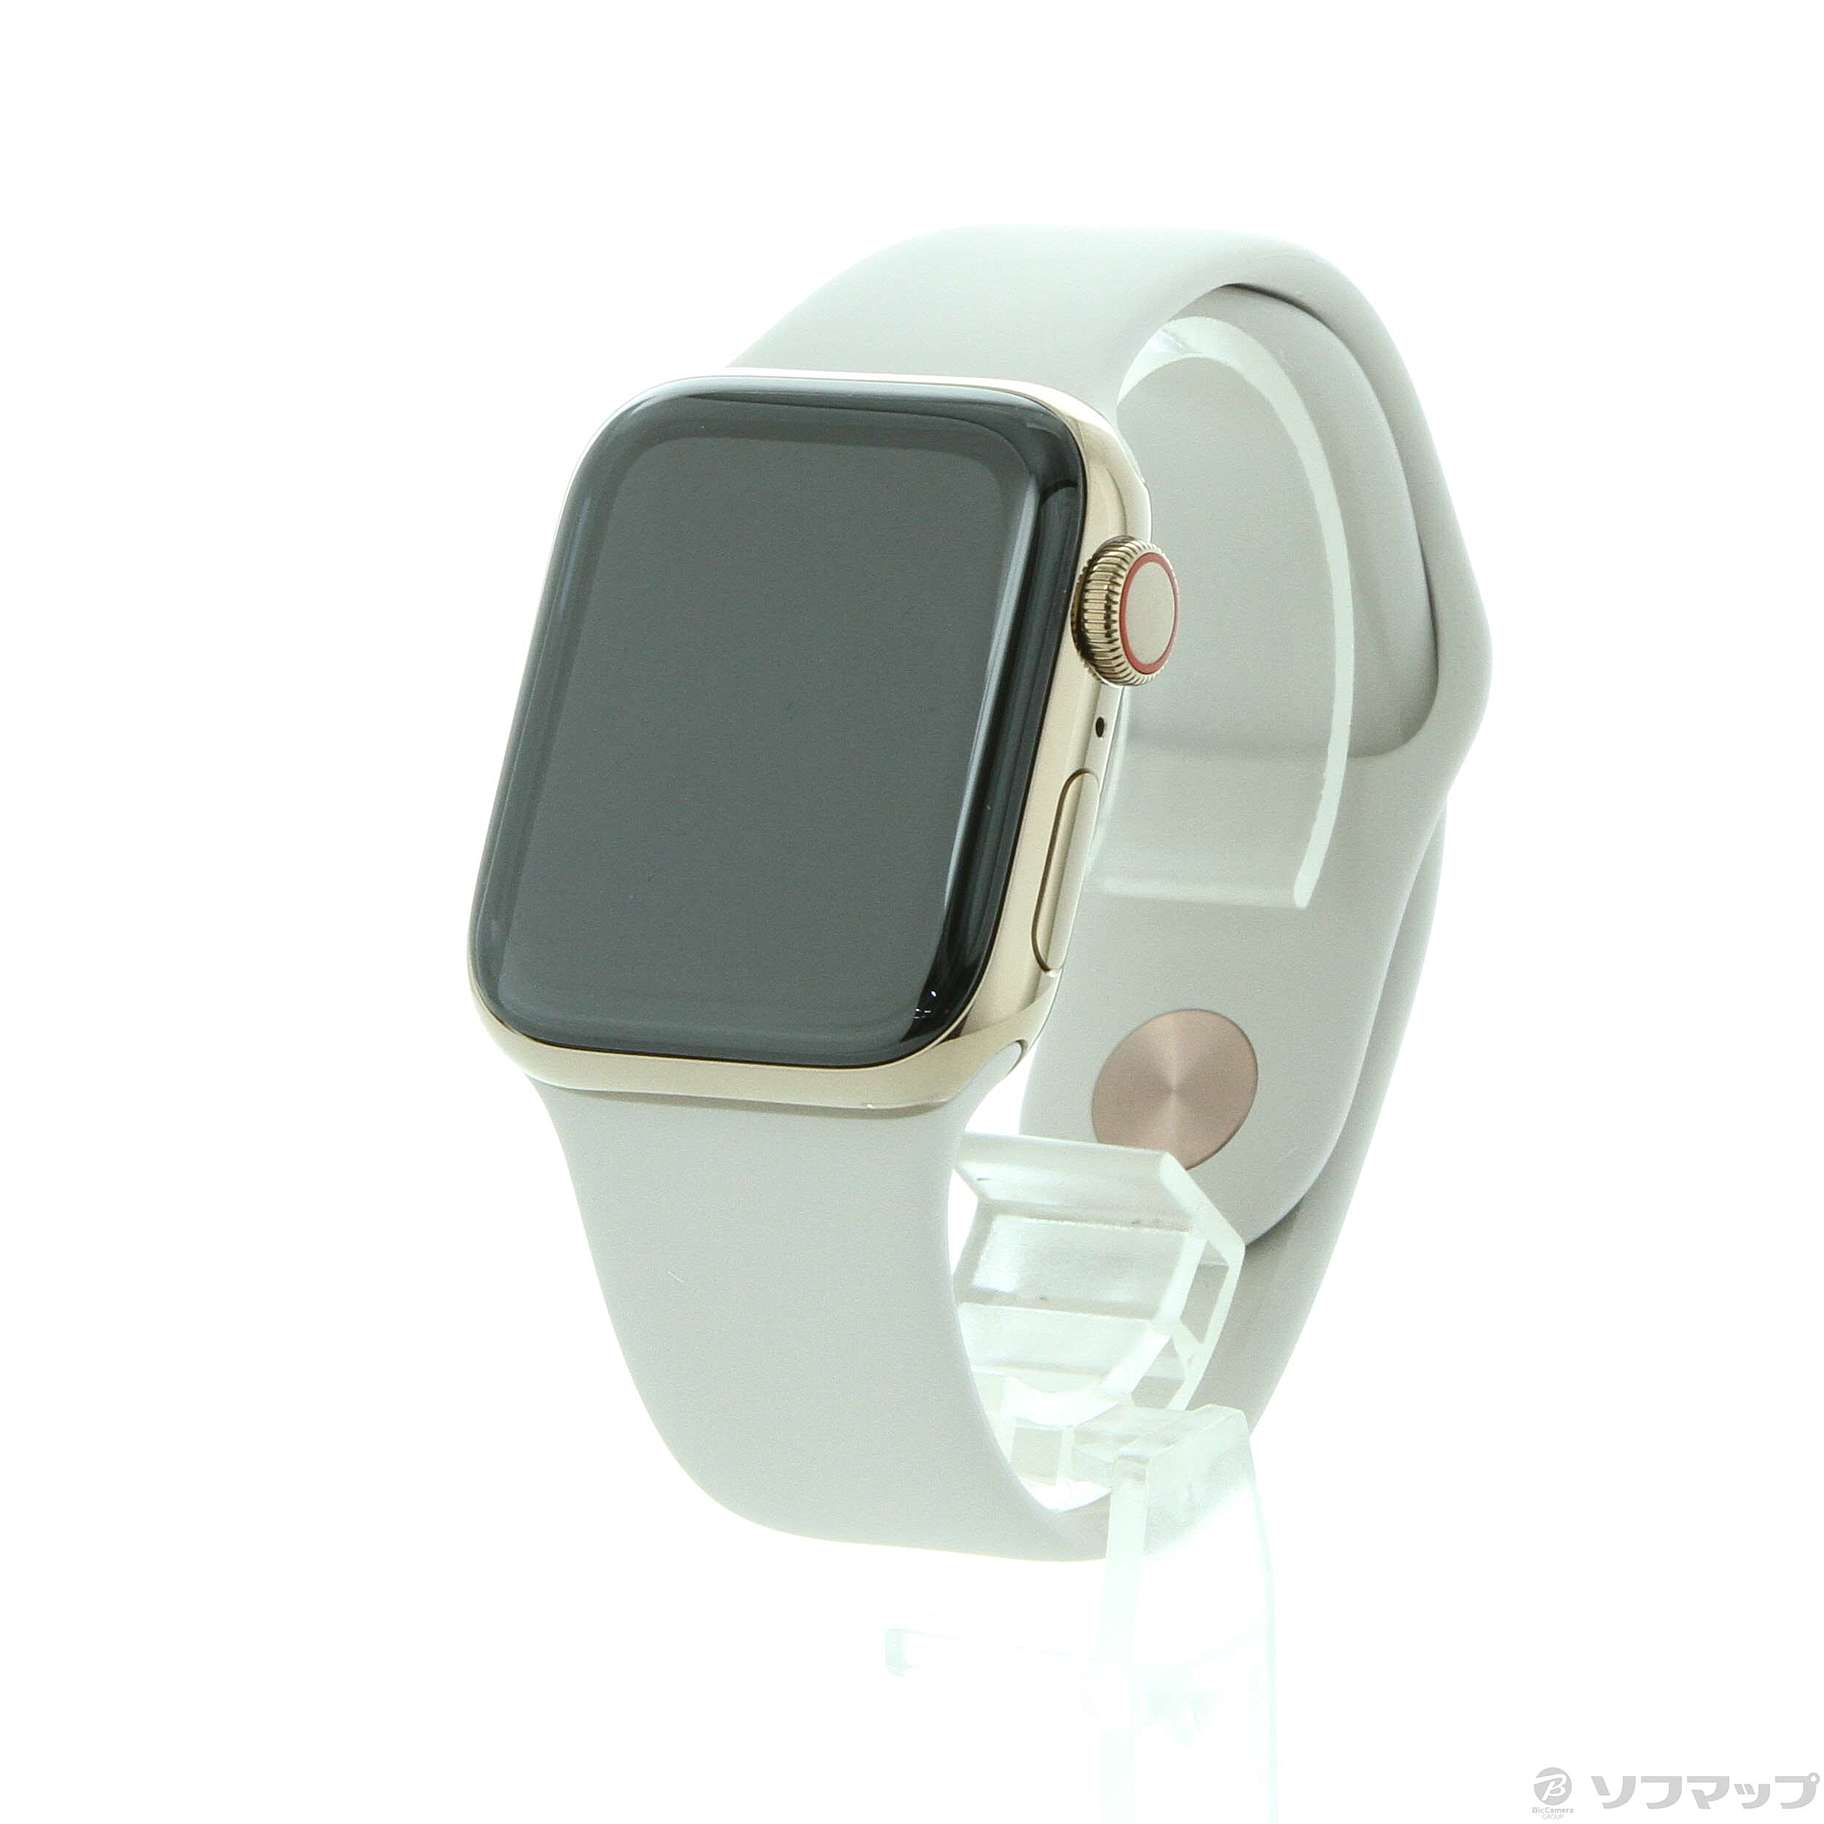 〔展示品〕 Apple Watch Series 4 GPS + Cellular 40mm ゴールドステンレススチールケース ストーンスポーツバンド